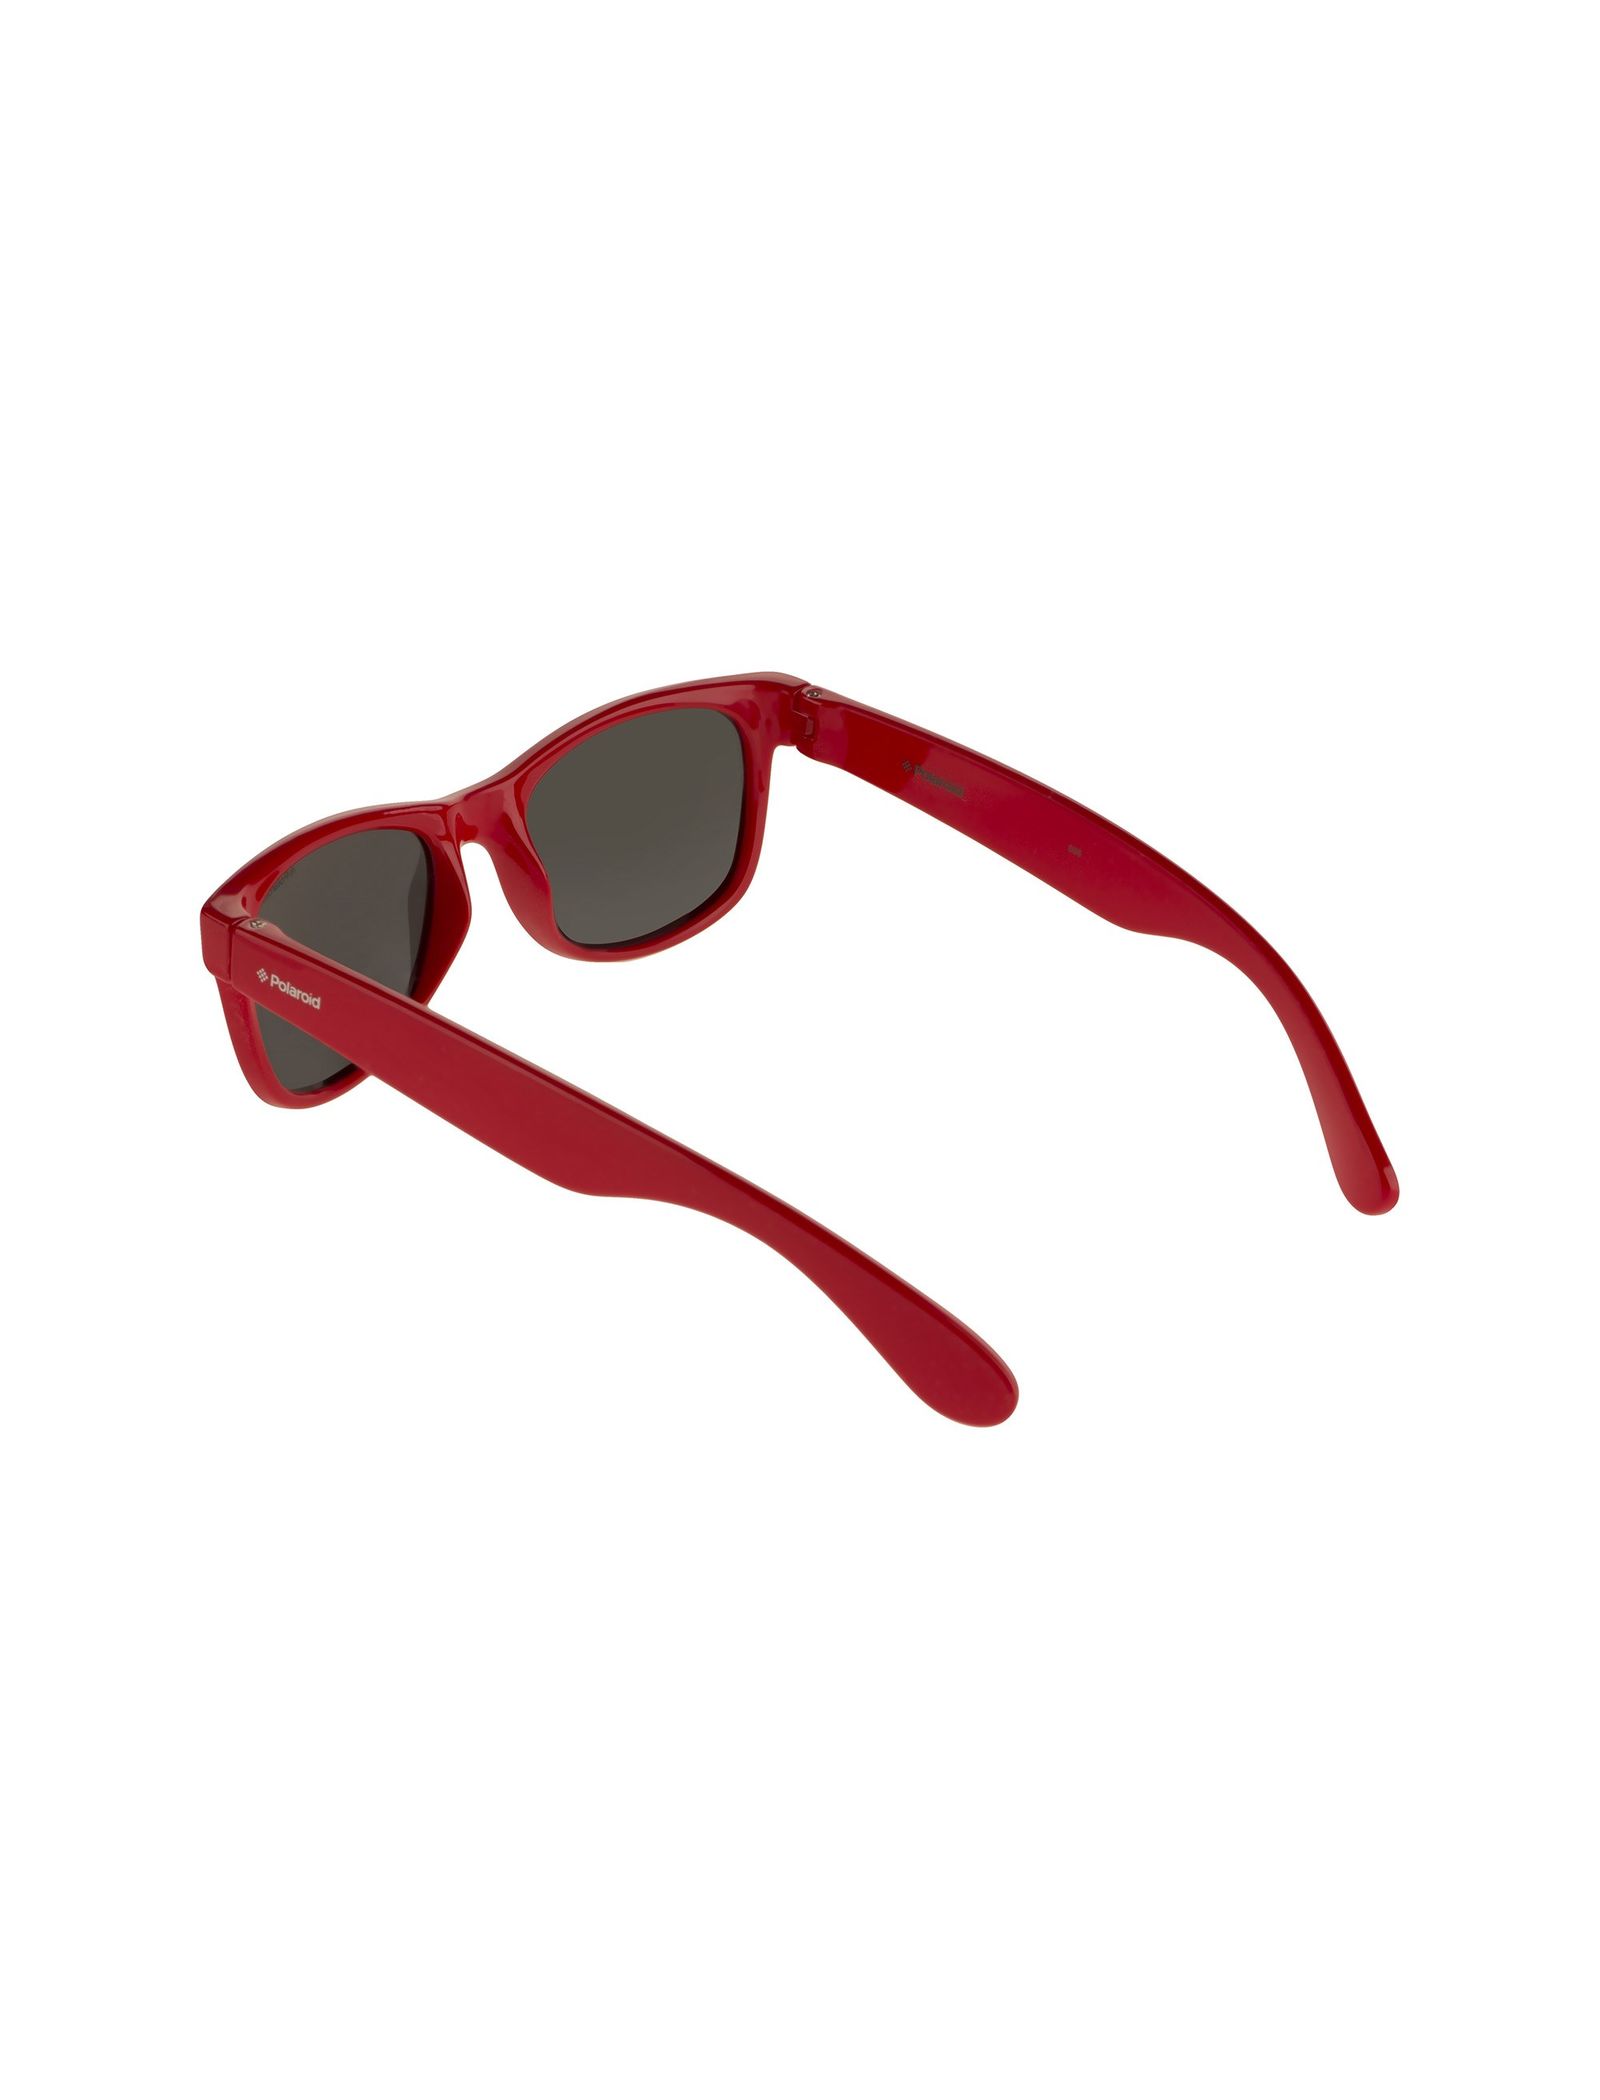 عینک آفتابی ویفرر بچگانه - پولاروید - قرمز - 5